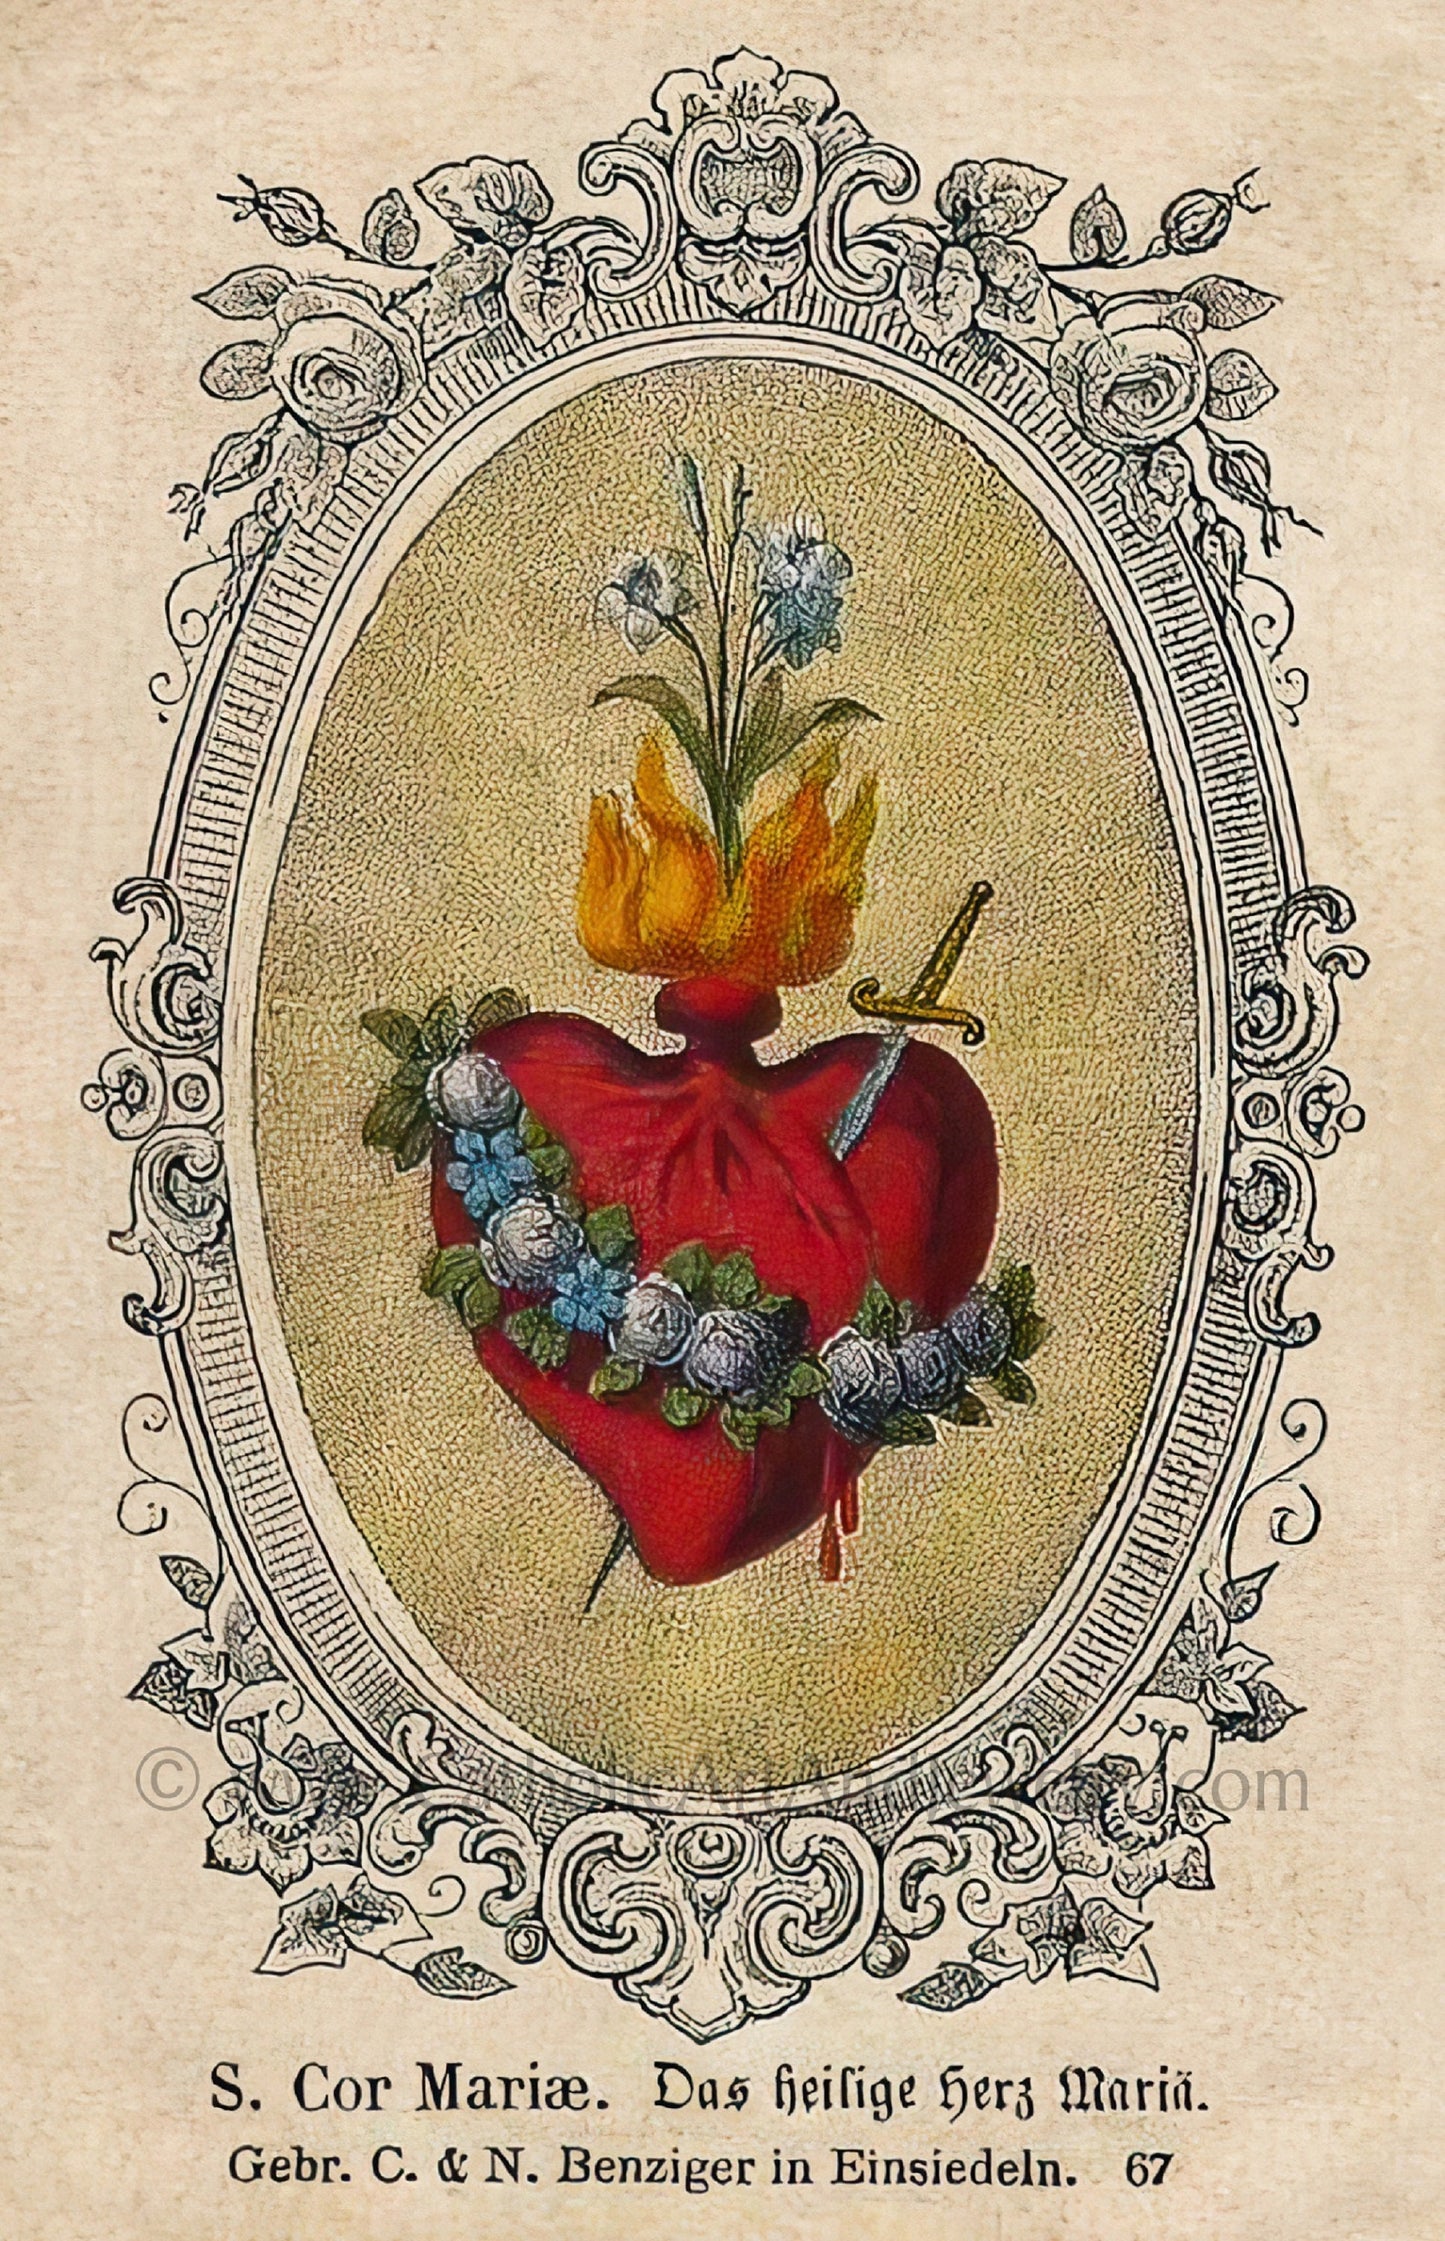 Immaculate Heart – Old Fashioned – Einsiedeln – 3 sizes – Based on Vintage Holy Card – Catholic Art Print – Catholic Gift